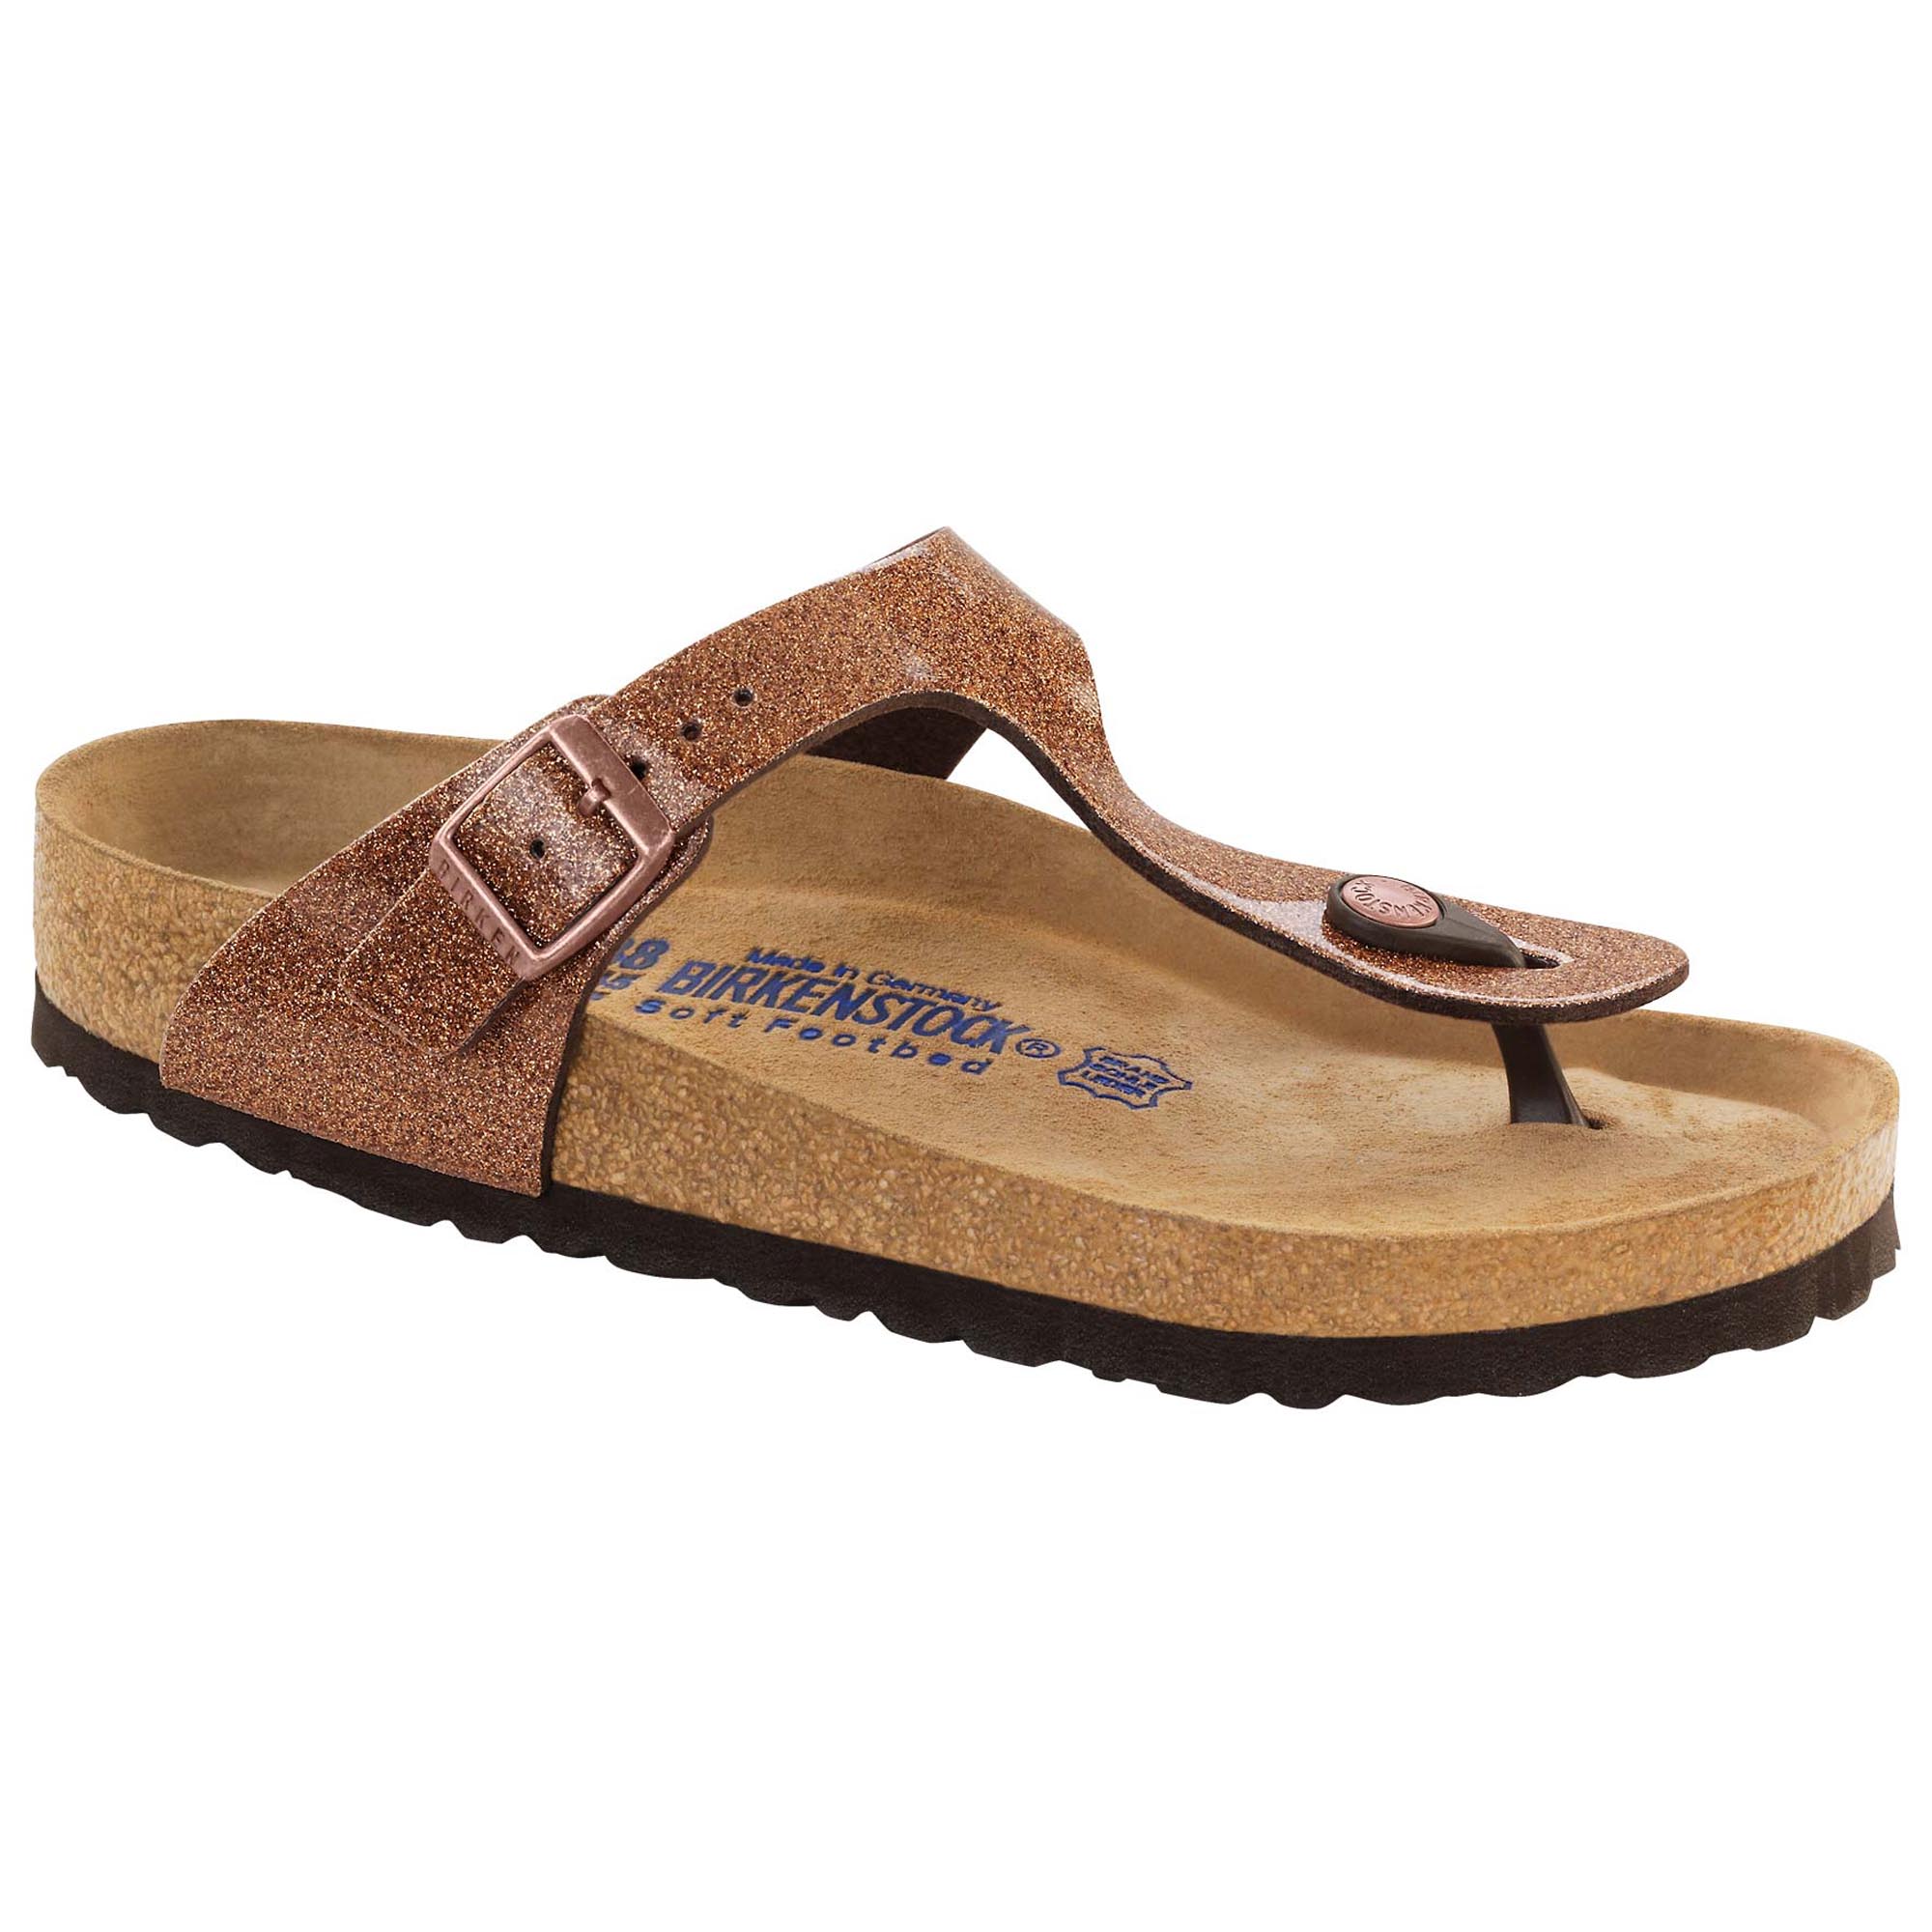 birkenstock bronze sandals